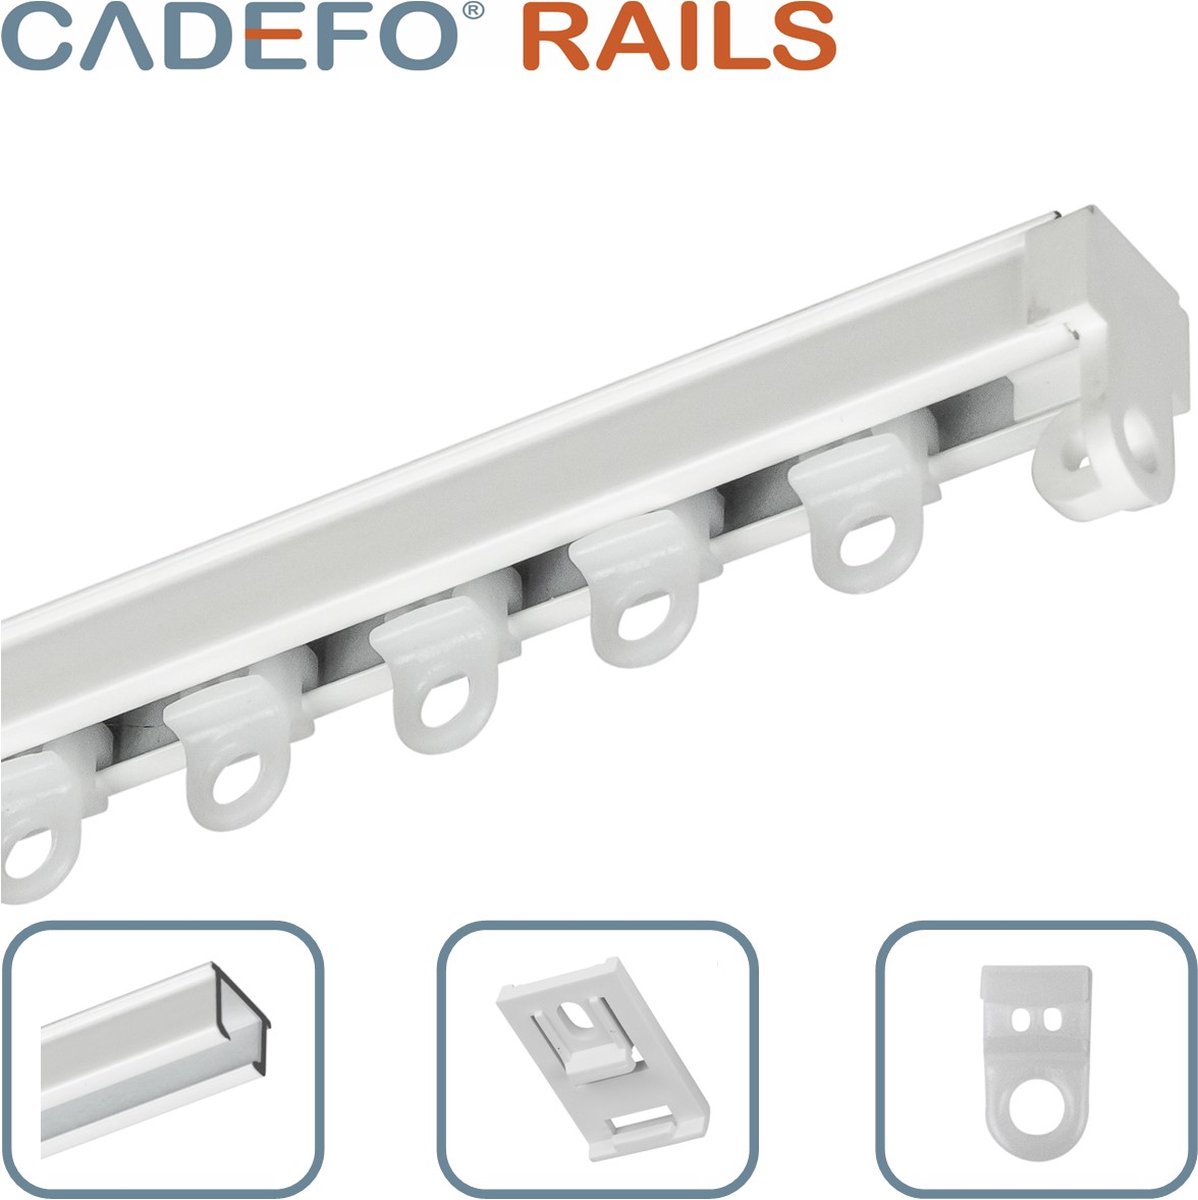 CADEFO RAILS (151 - 200 cm) Gordijnrails - Compleet op maat! - UIT 1 STUK - Leverbaar tot 6 meter - Plafondbevestiging - Lengte 182 cm